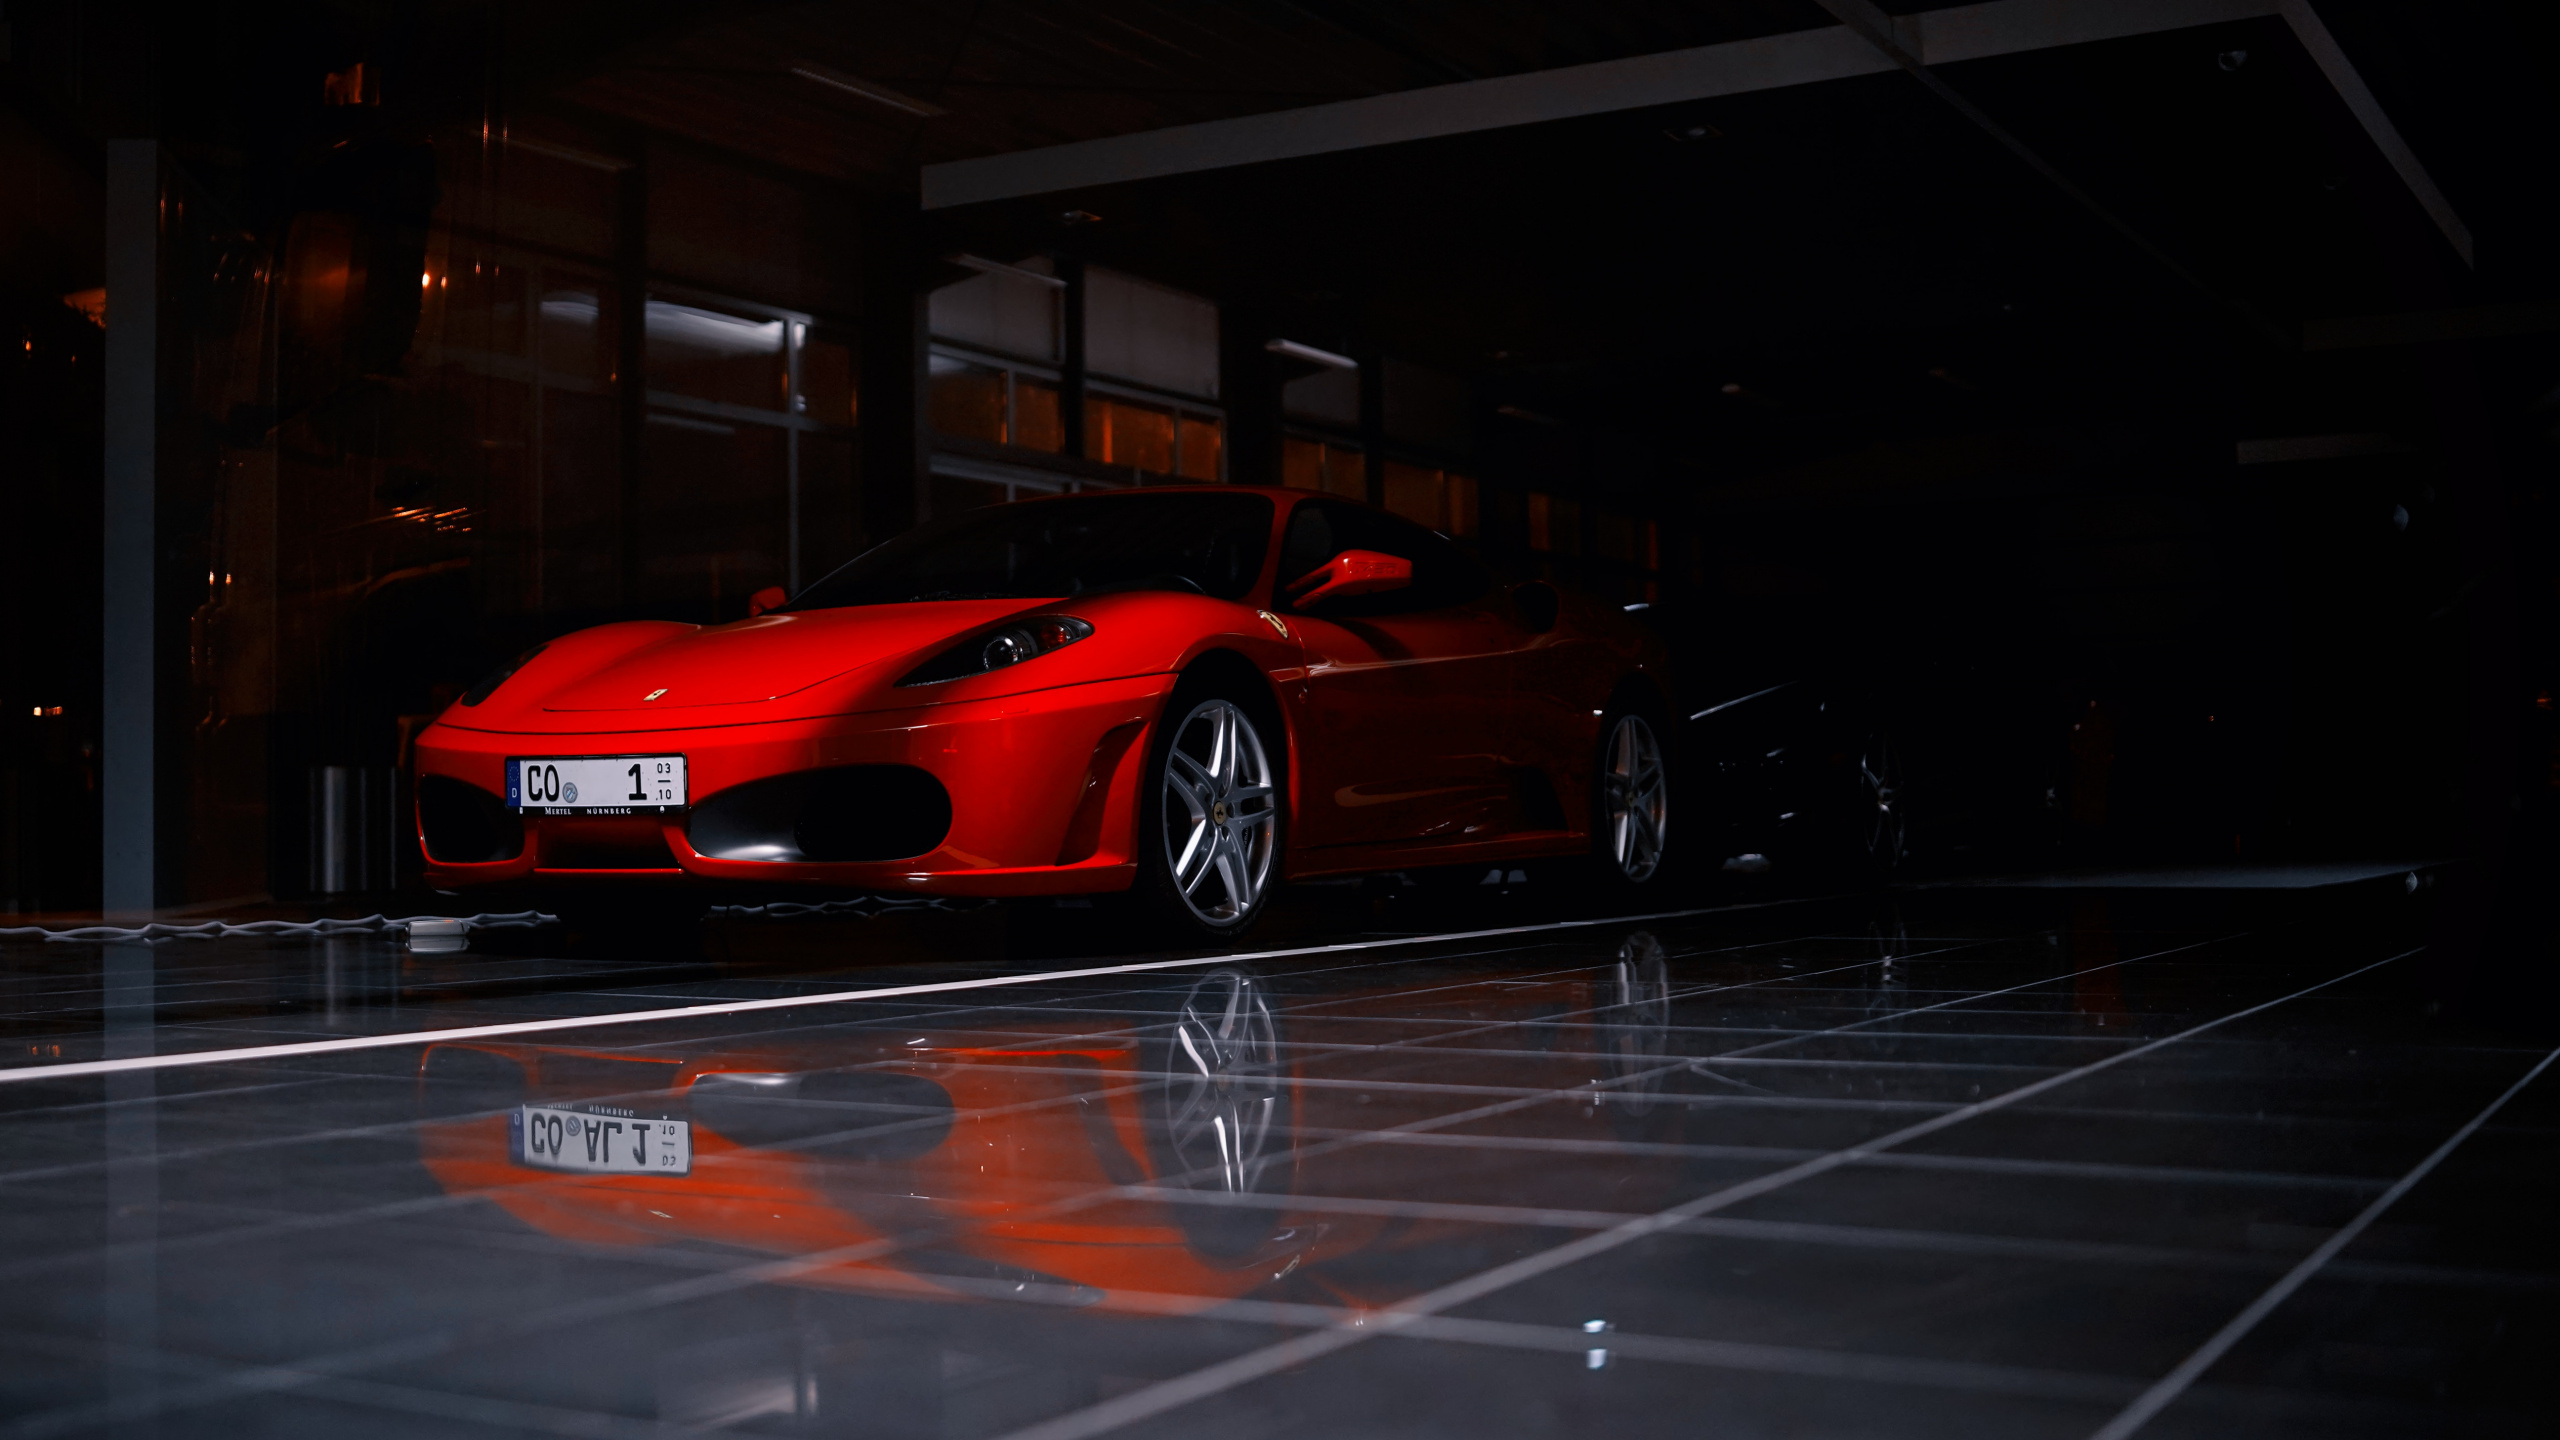 Ferrari 458 Italia Rojo Estacionado en el Estacionamiento. Wallpaper in 2560x1440 Resolution